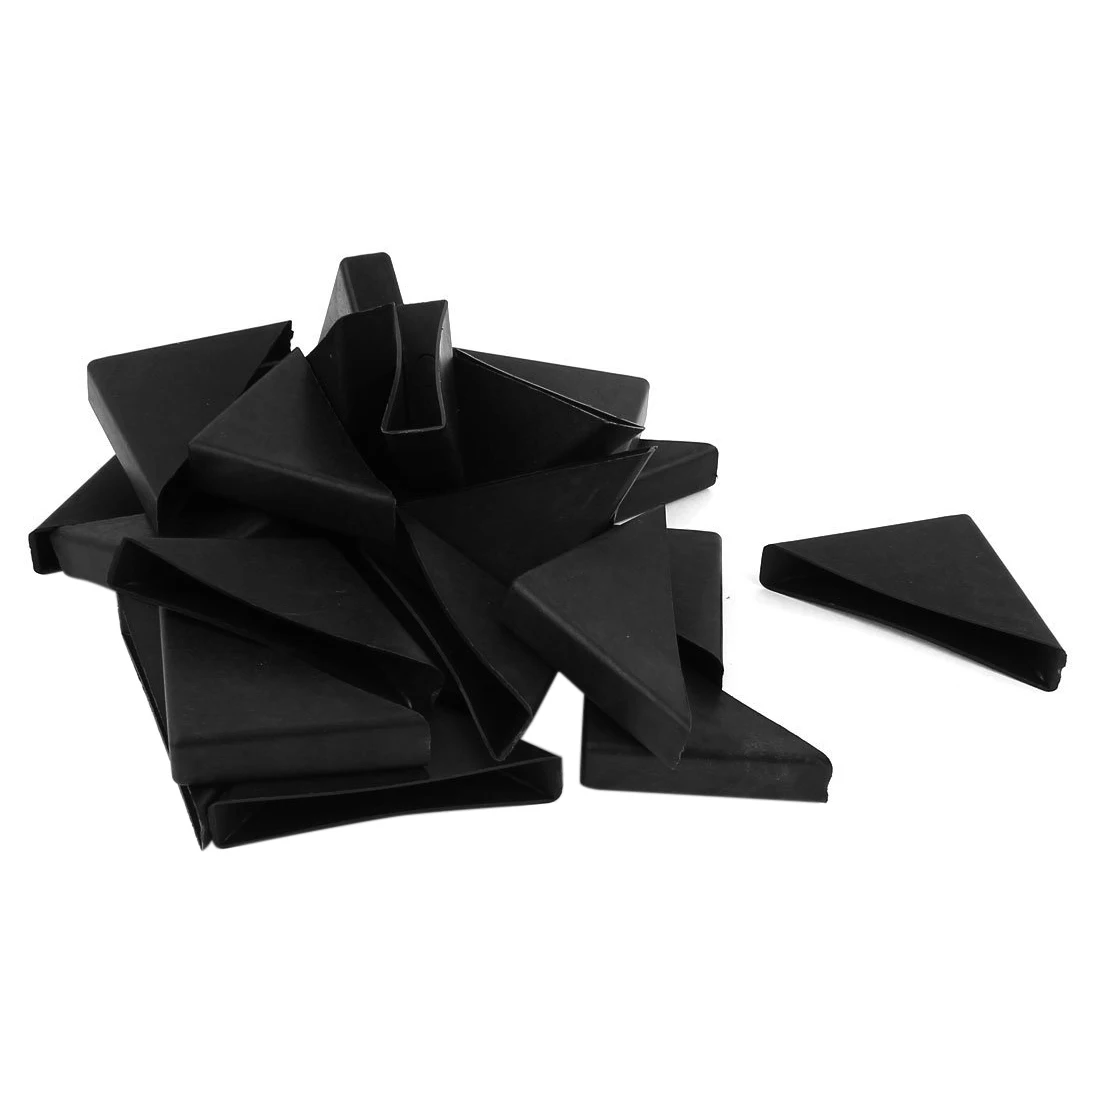 24 шт. 12 мм x 55 мм, черный, из пластика, встраиваемые защита мебели углу